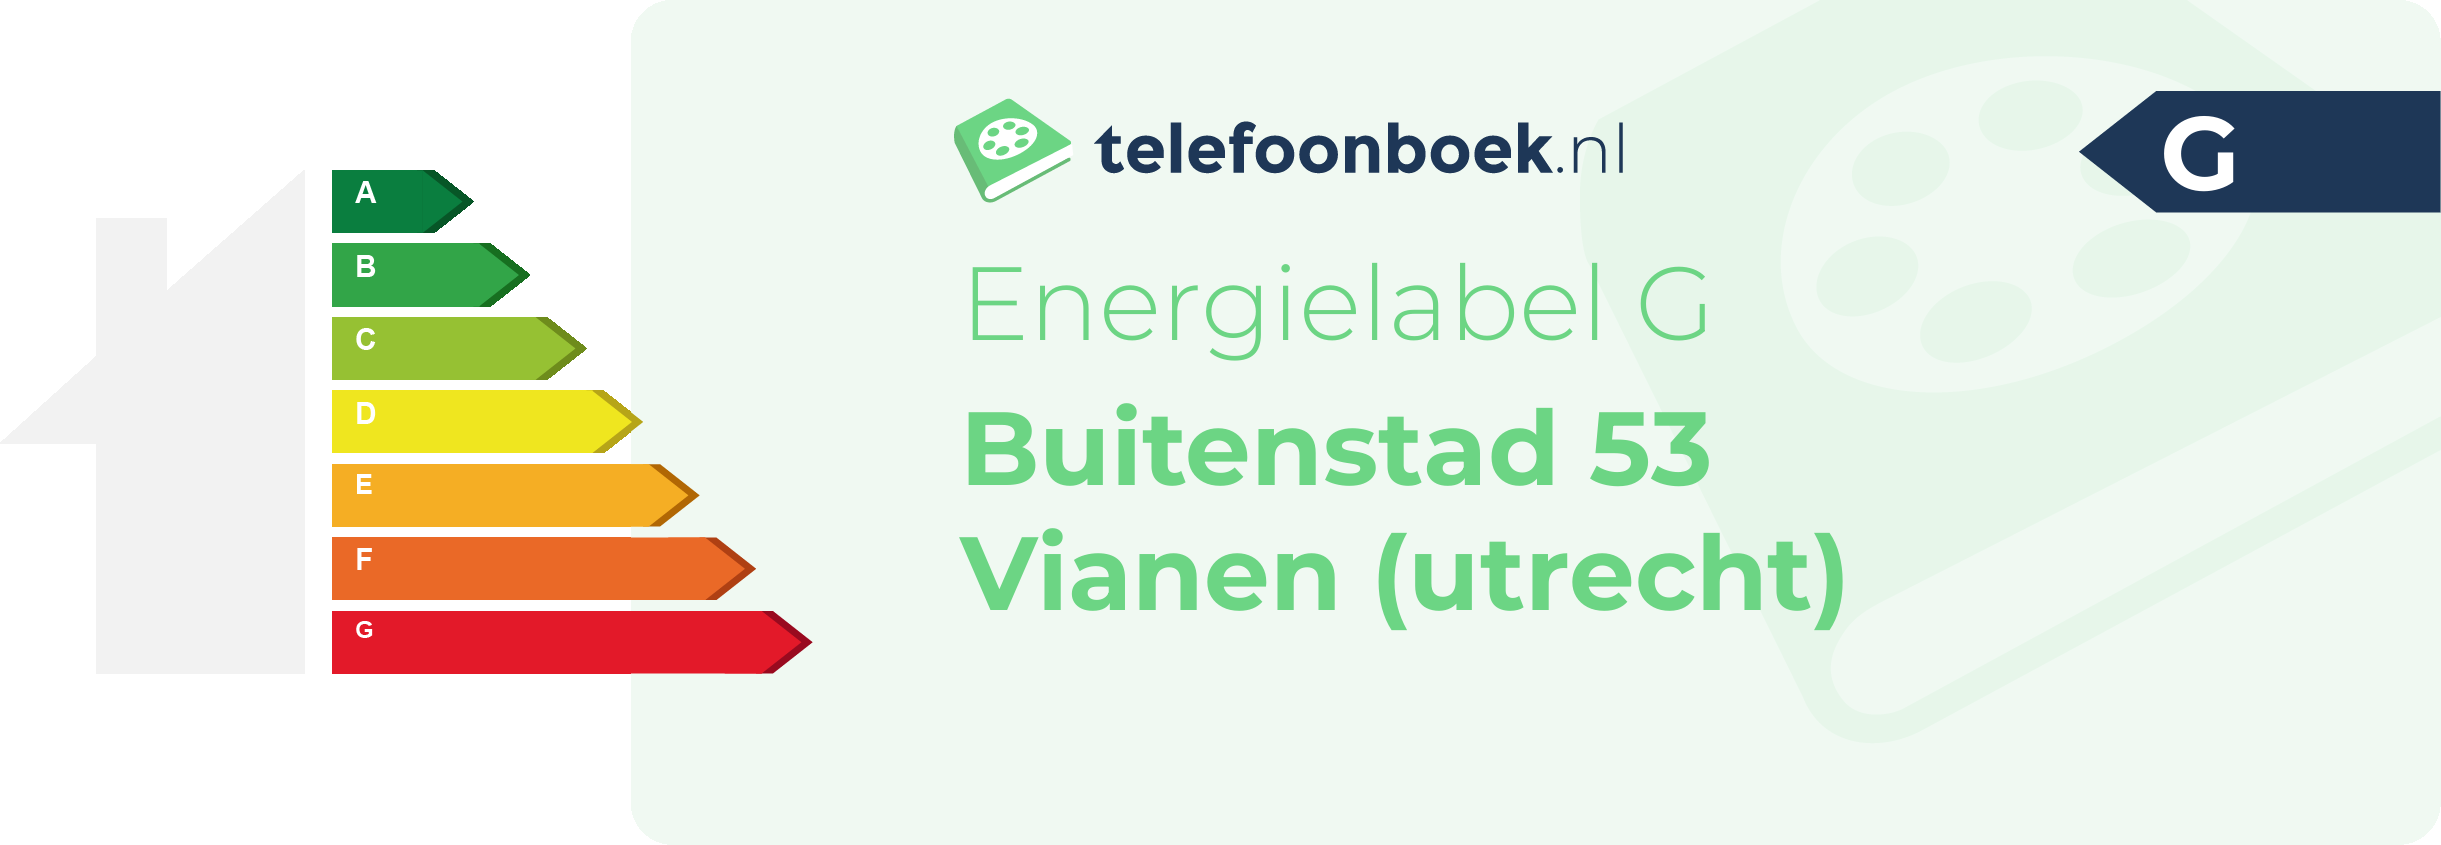 Energielabel Buitenstad 53 Vianen (Utrecht)